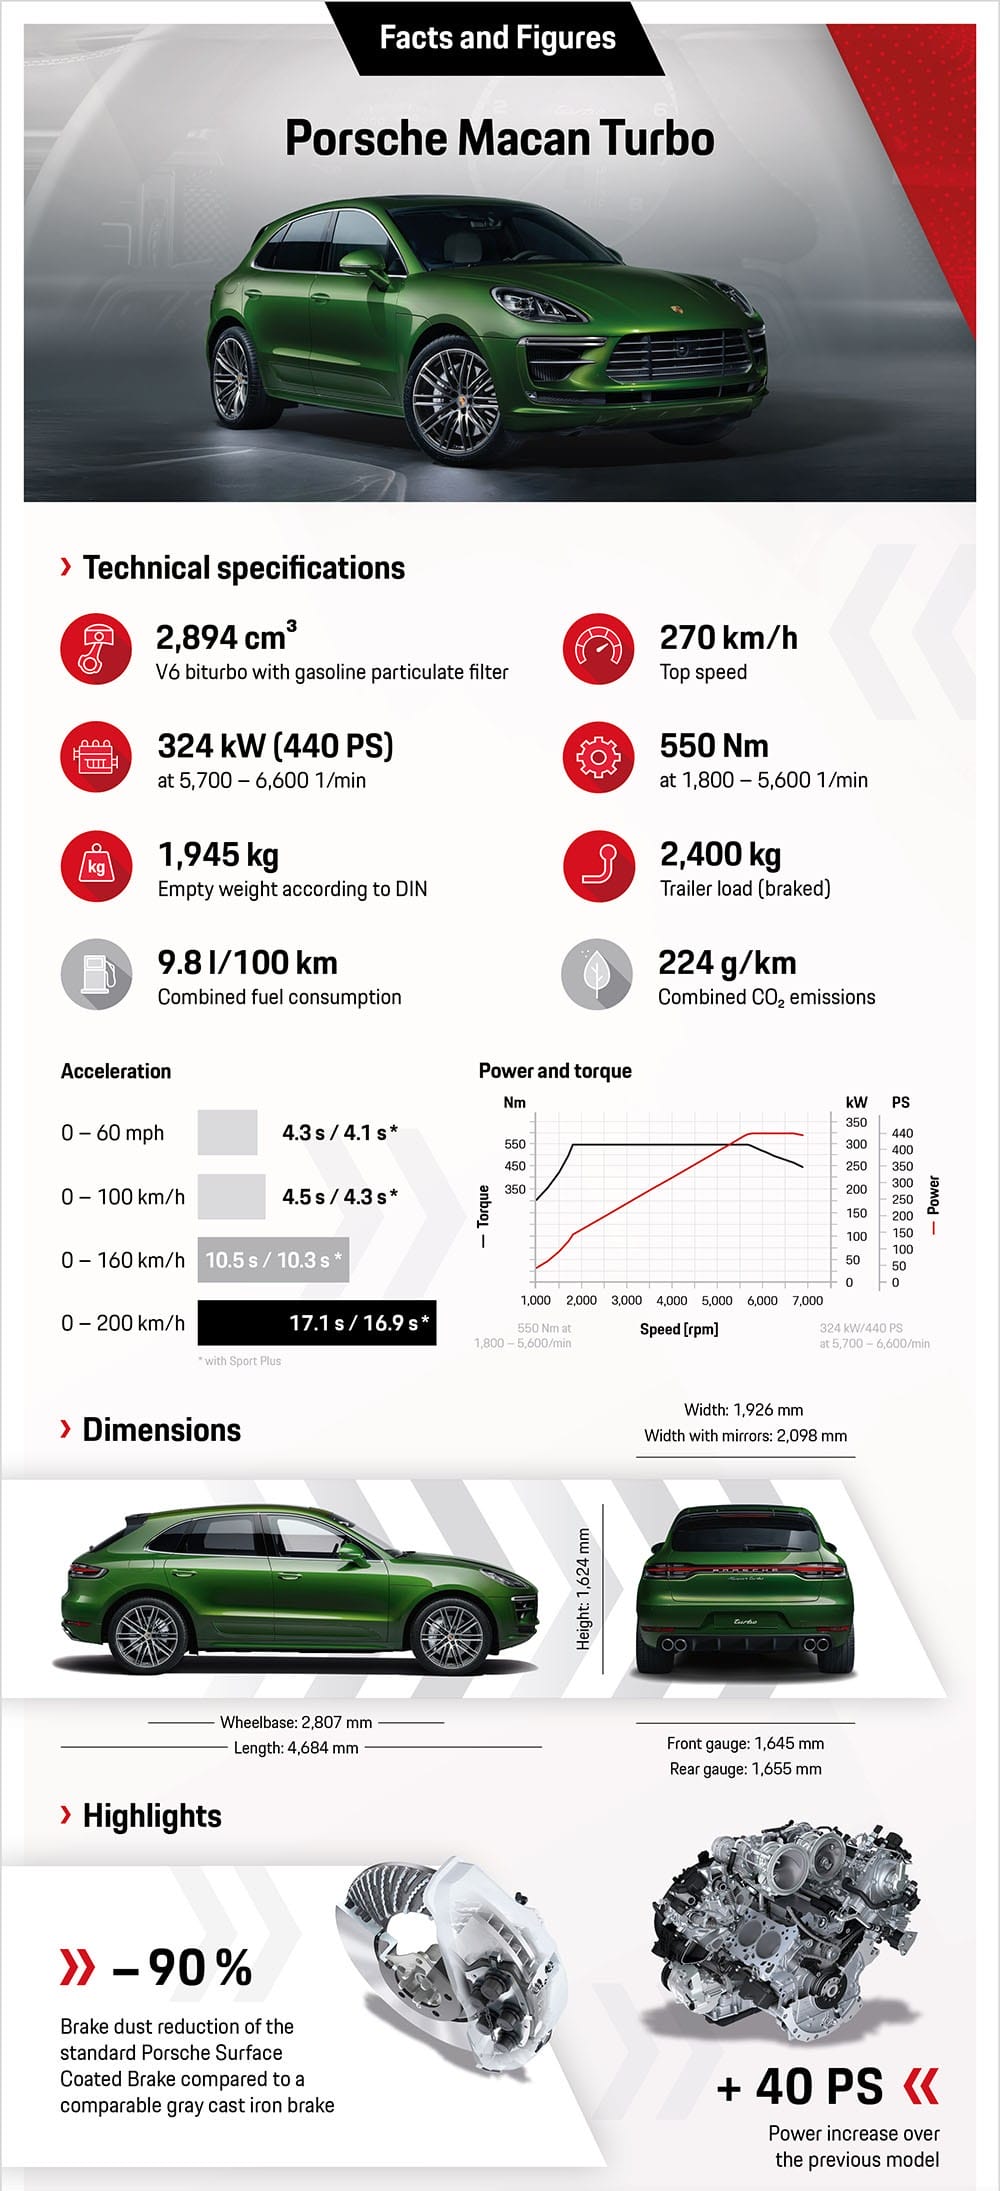 Diện kiến Porsche Macan Turbo 2020 “facelift”, dùng động cơ như Cayenne S ảnh 8